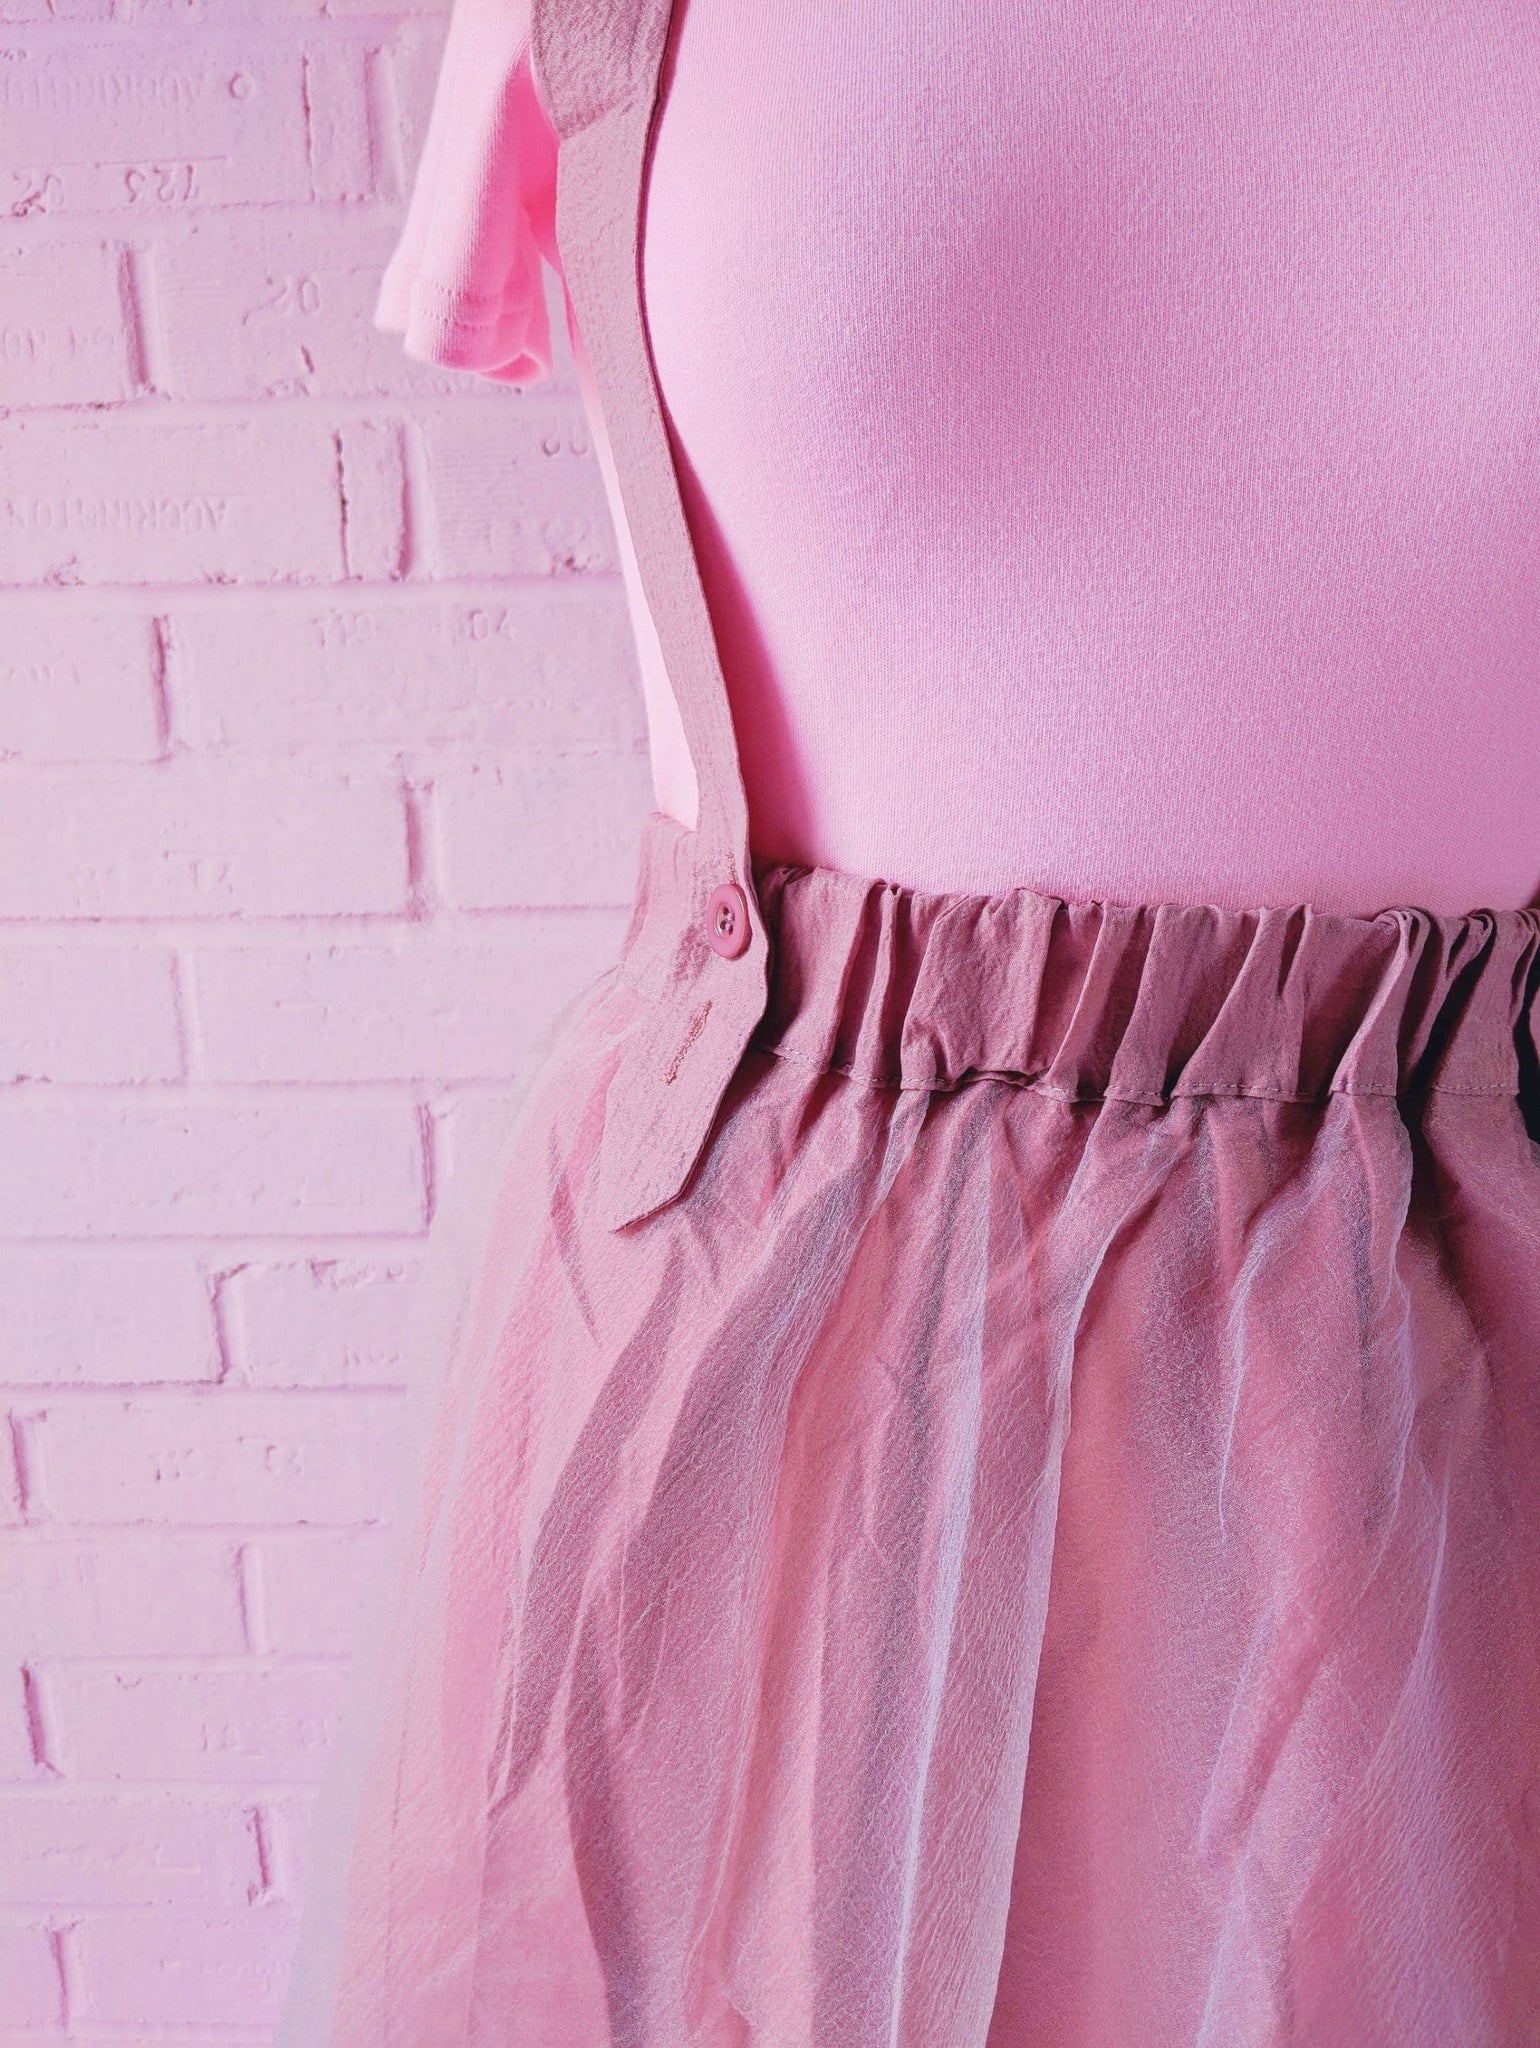 Dungaree Skirt – Princess Rags